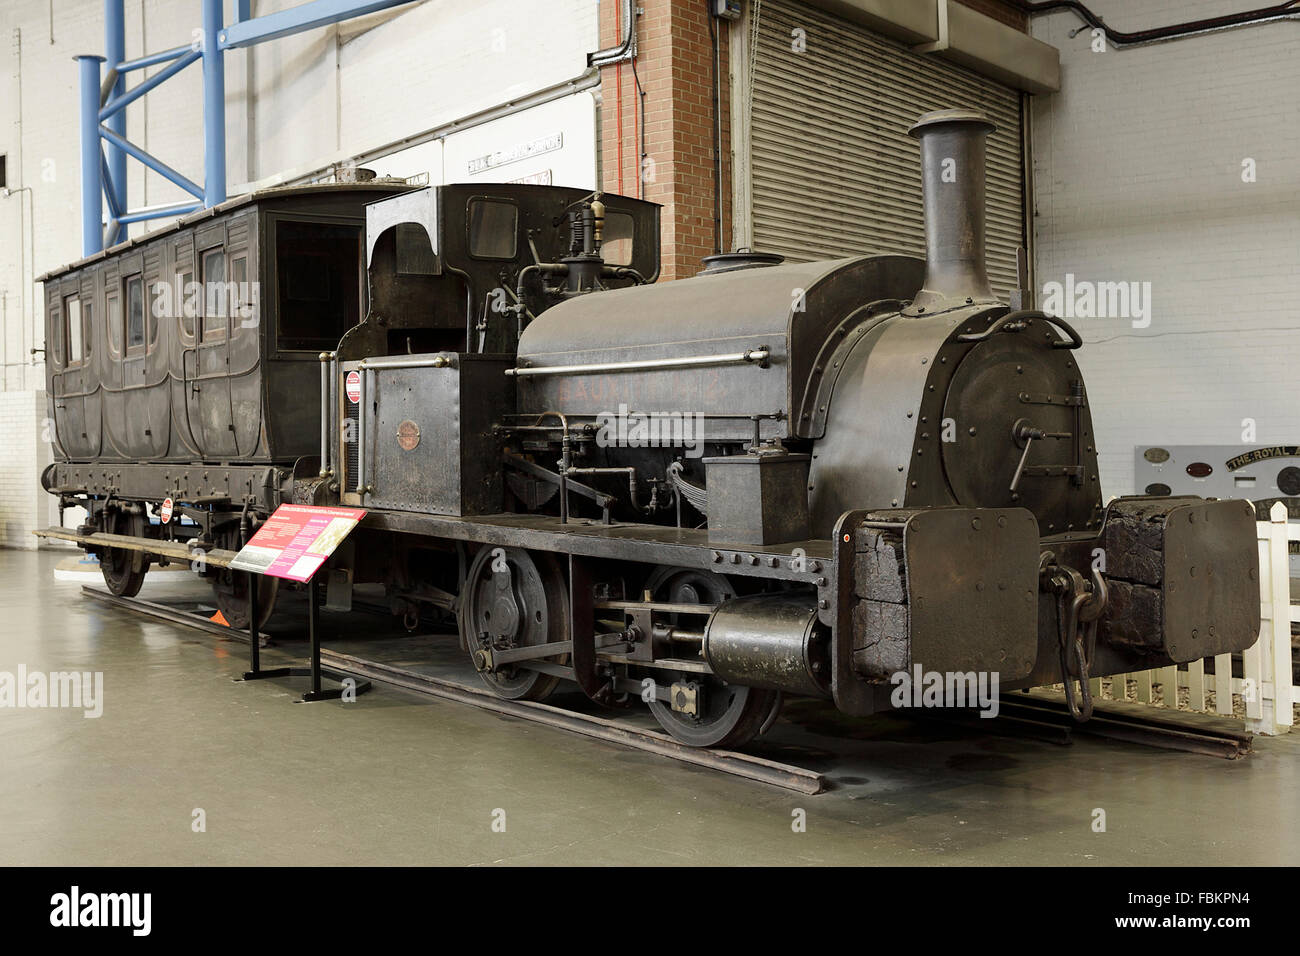 Immagine di "bauxite' locomotiive, moderni motori ferroviari e passato meraviglie ingegneristiche al National Railway Museum di York, UK. Foto Stock